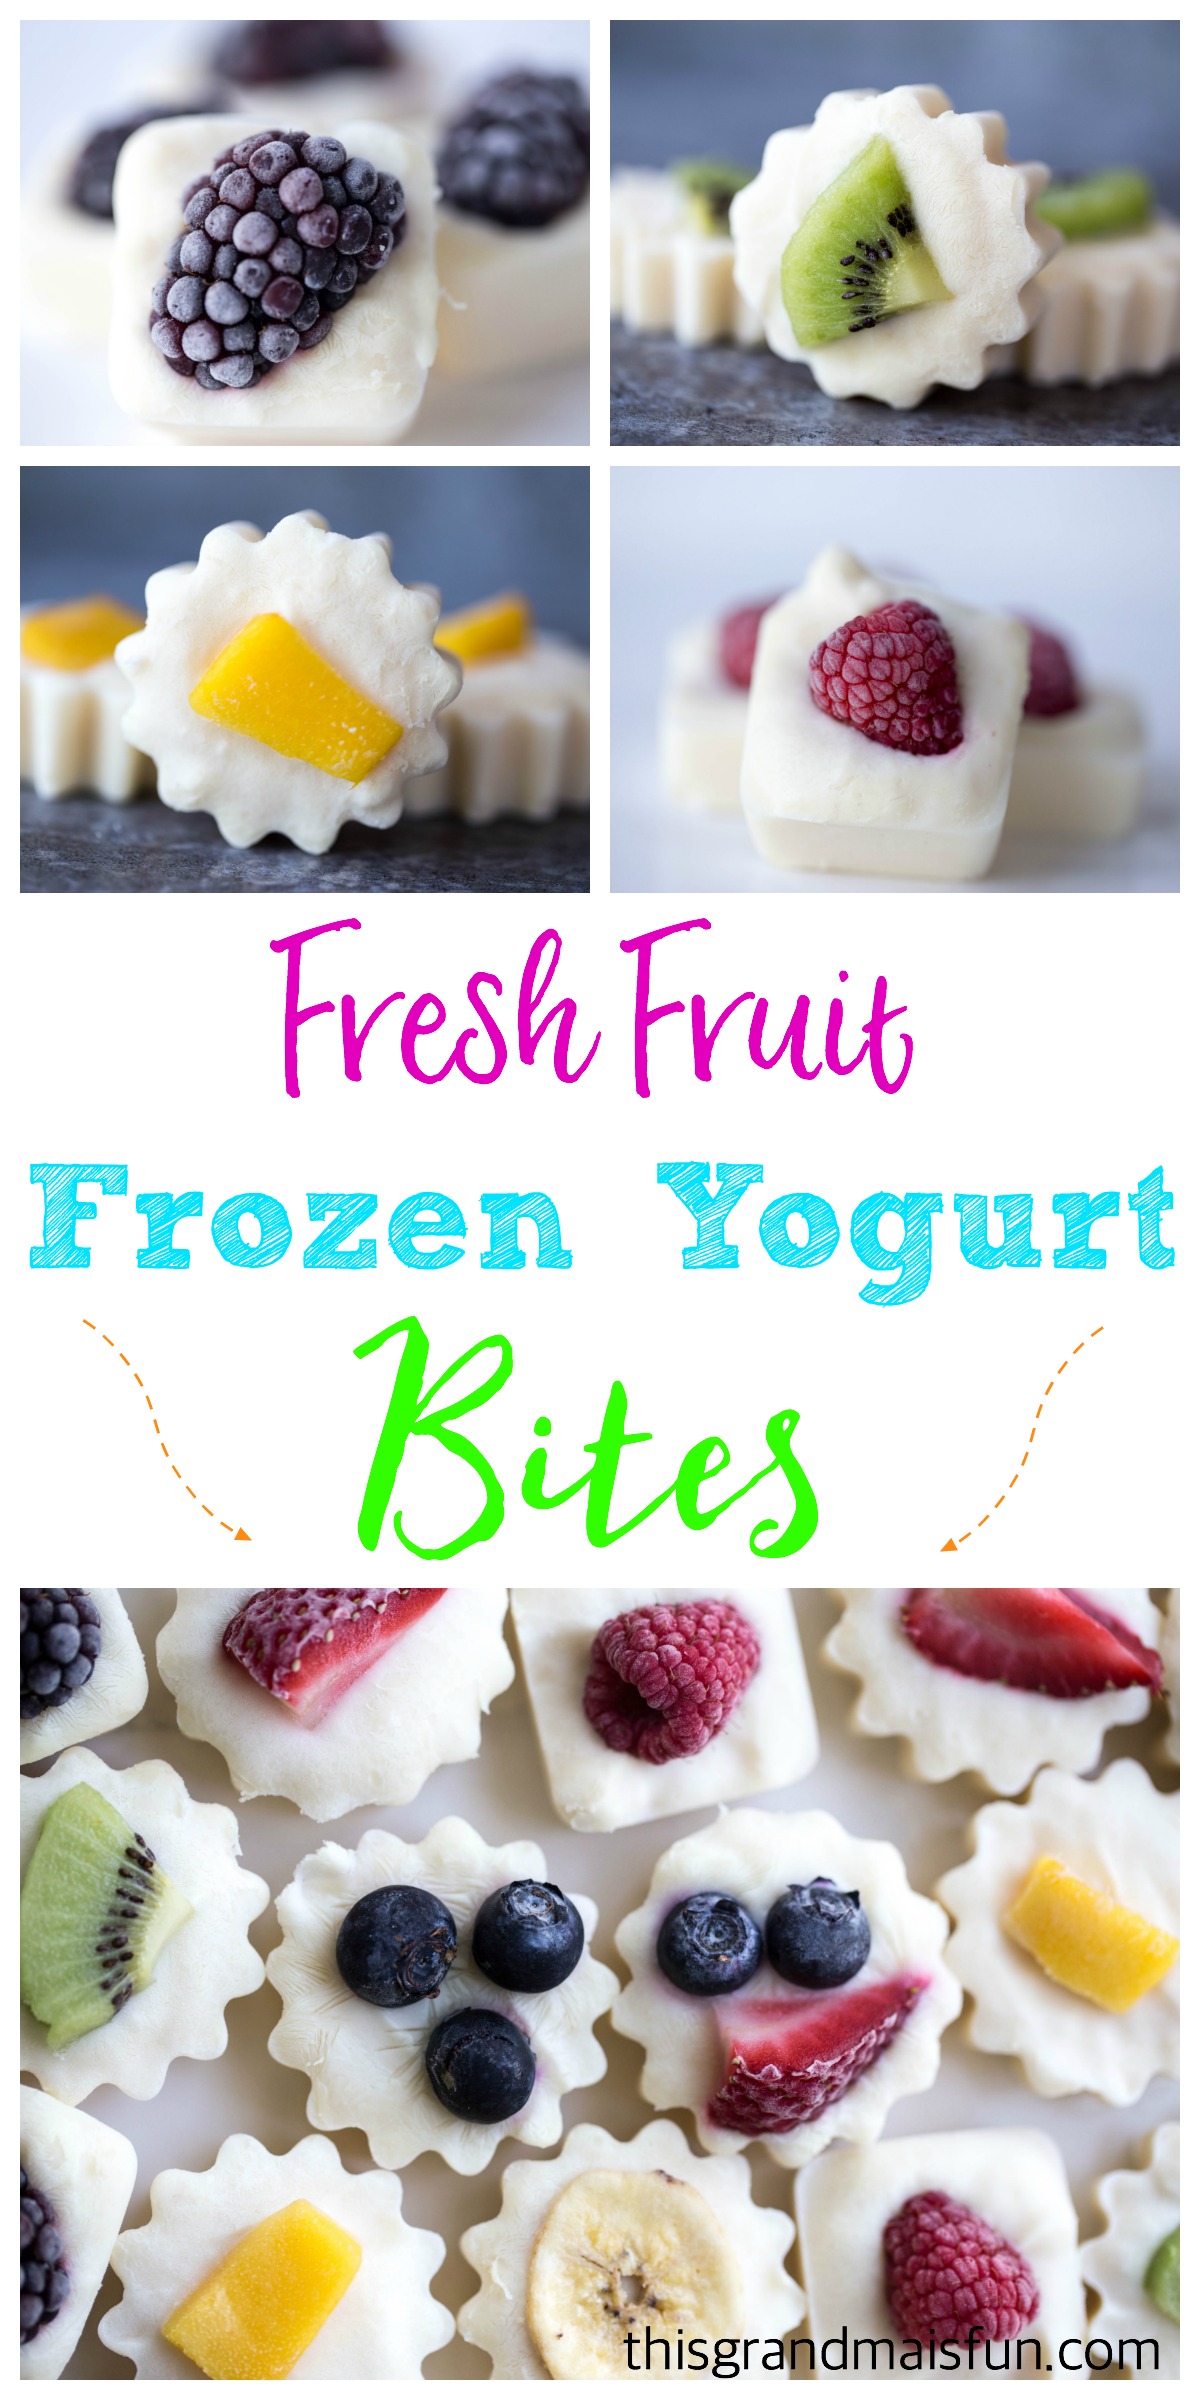 Fresh Fruit Frozen Yogurt Bites - TGIF - This Grandma is Fun